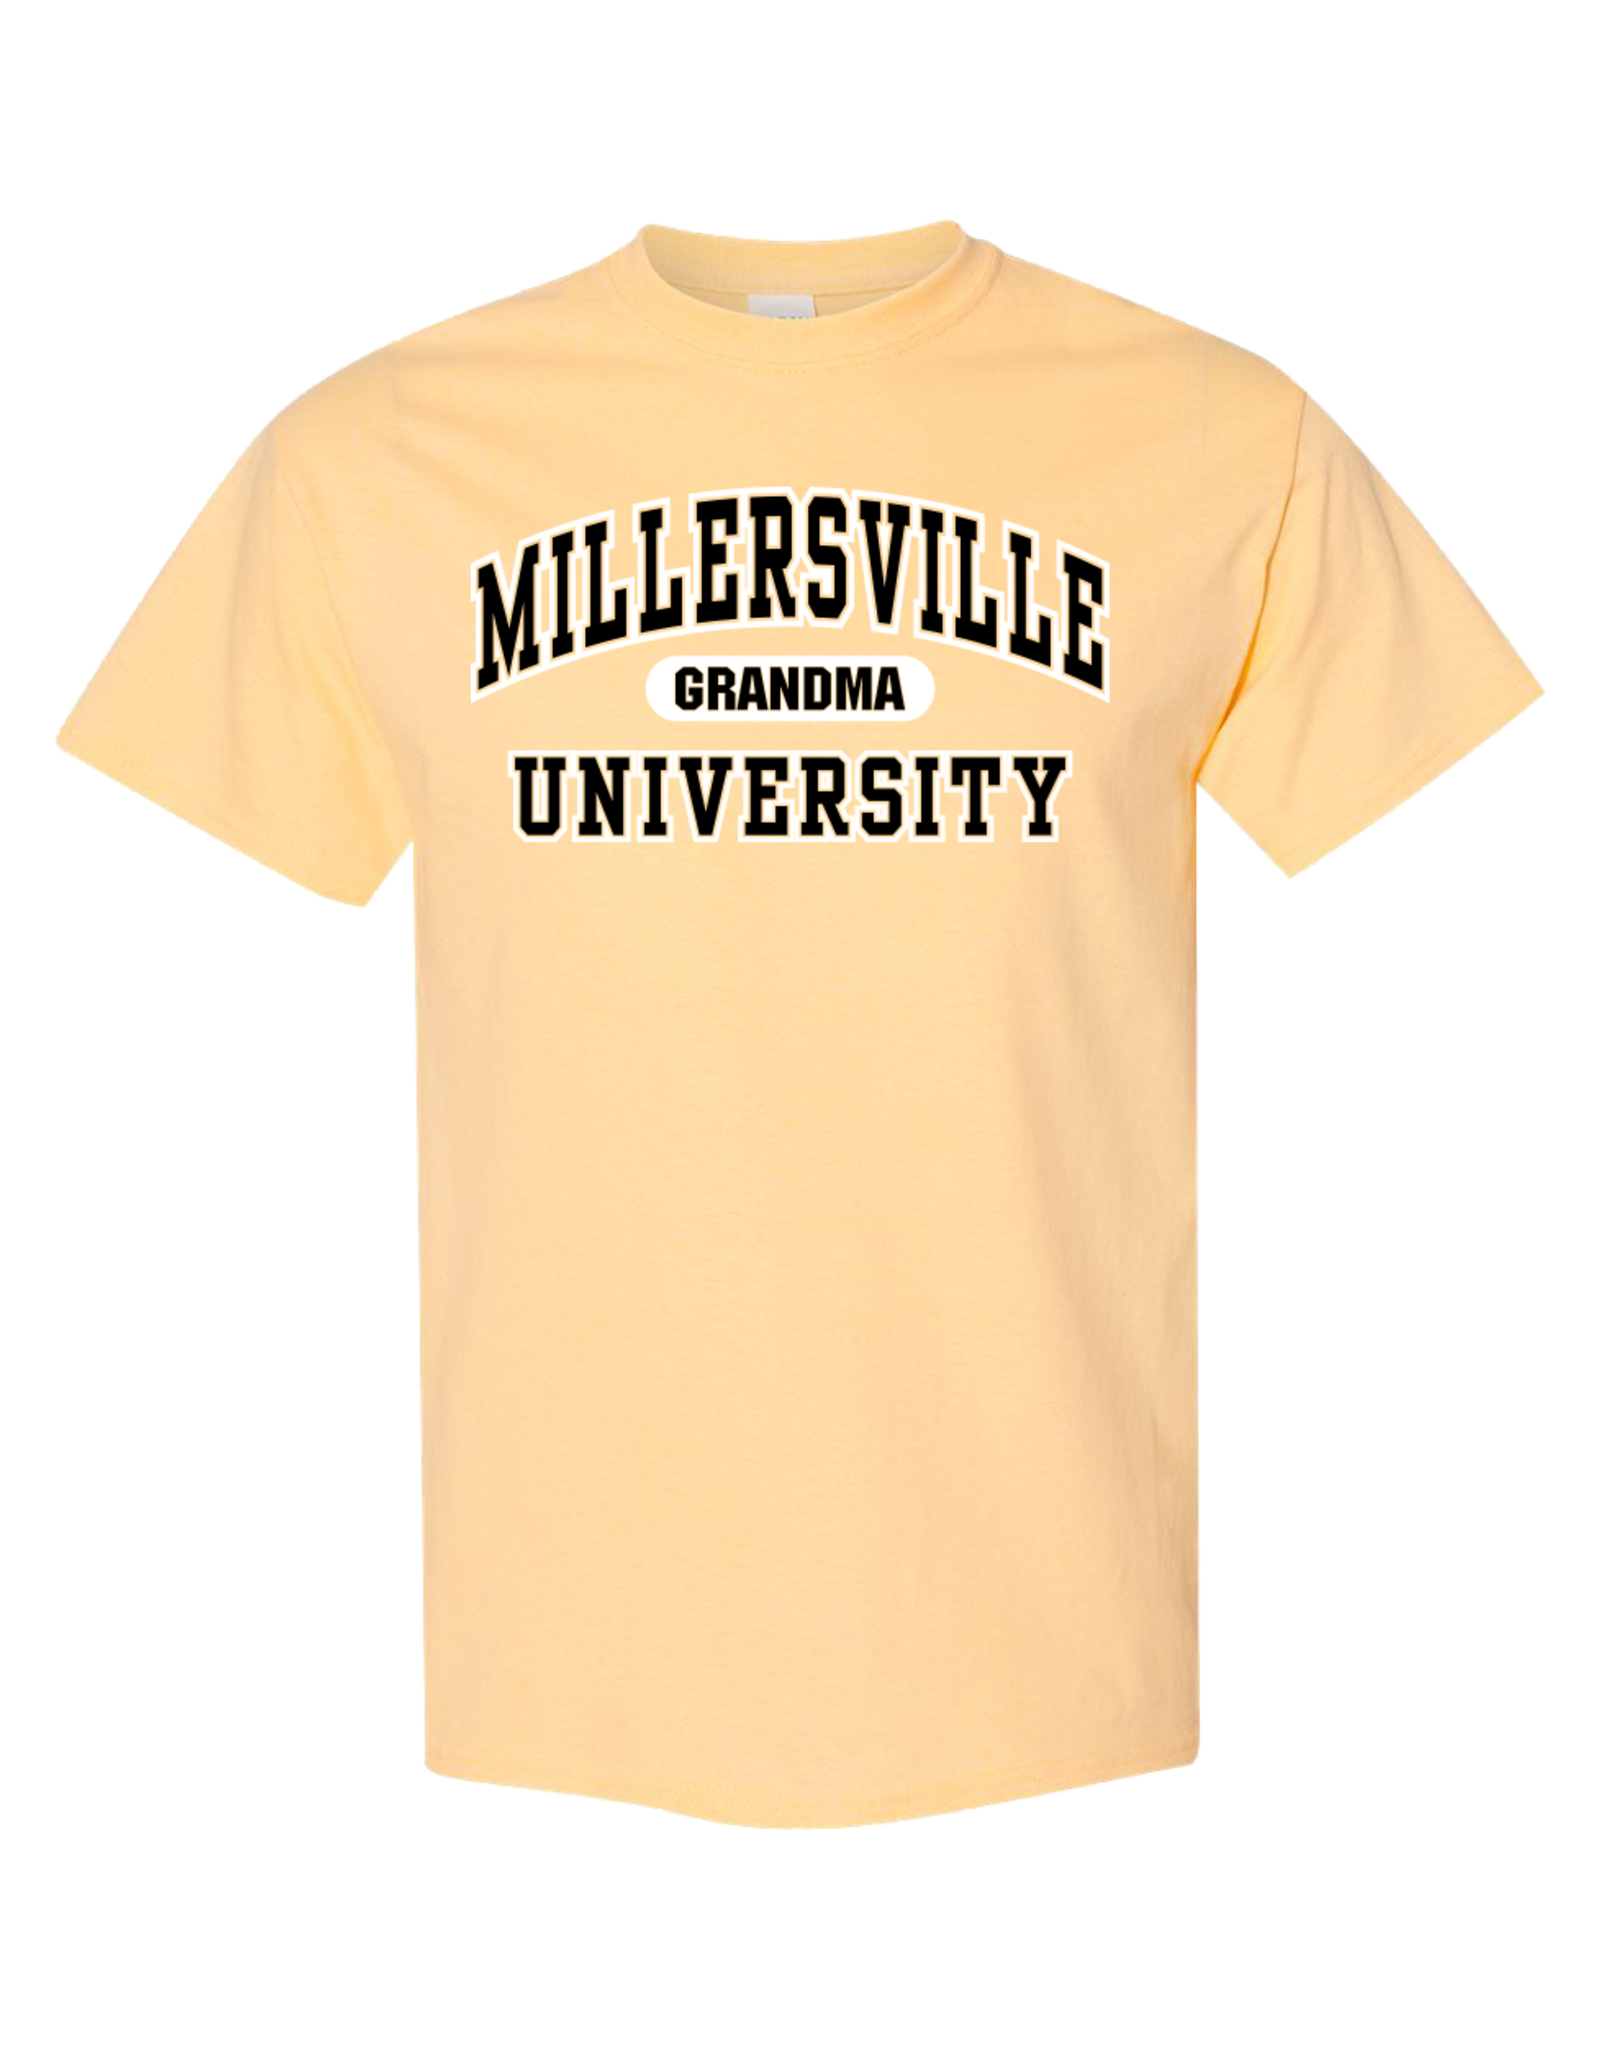 Millersville University Grandma Tee - Yellow Haze